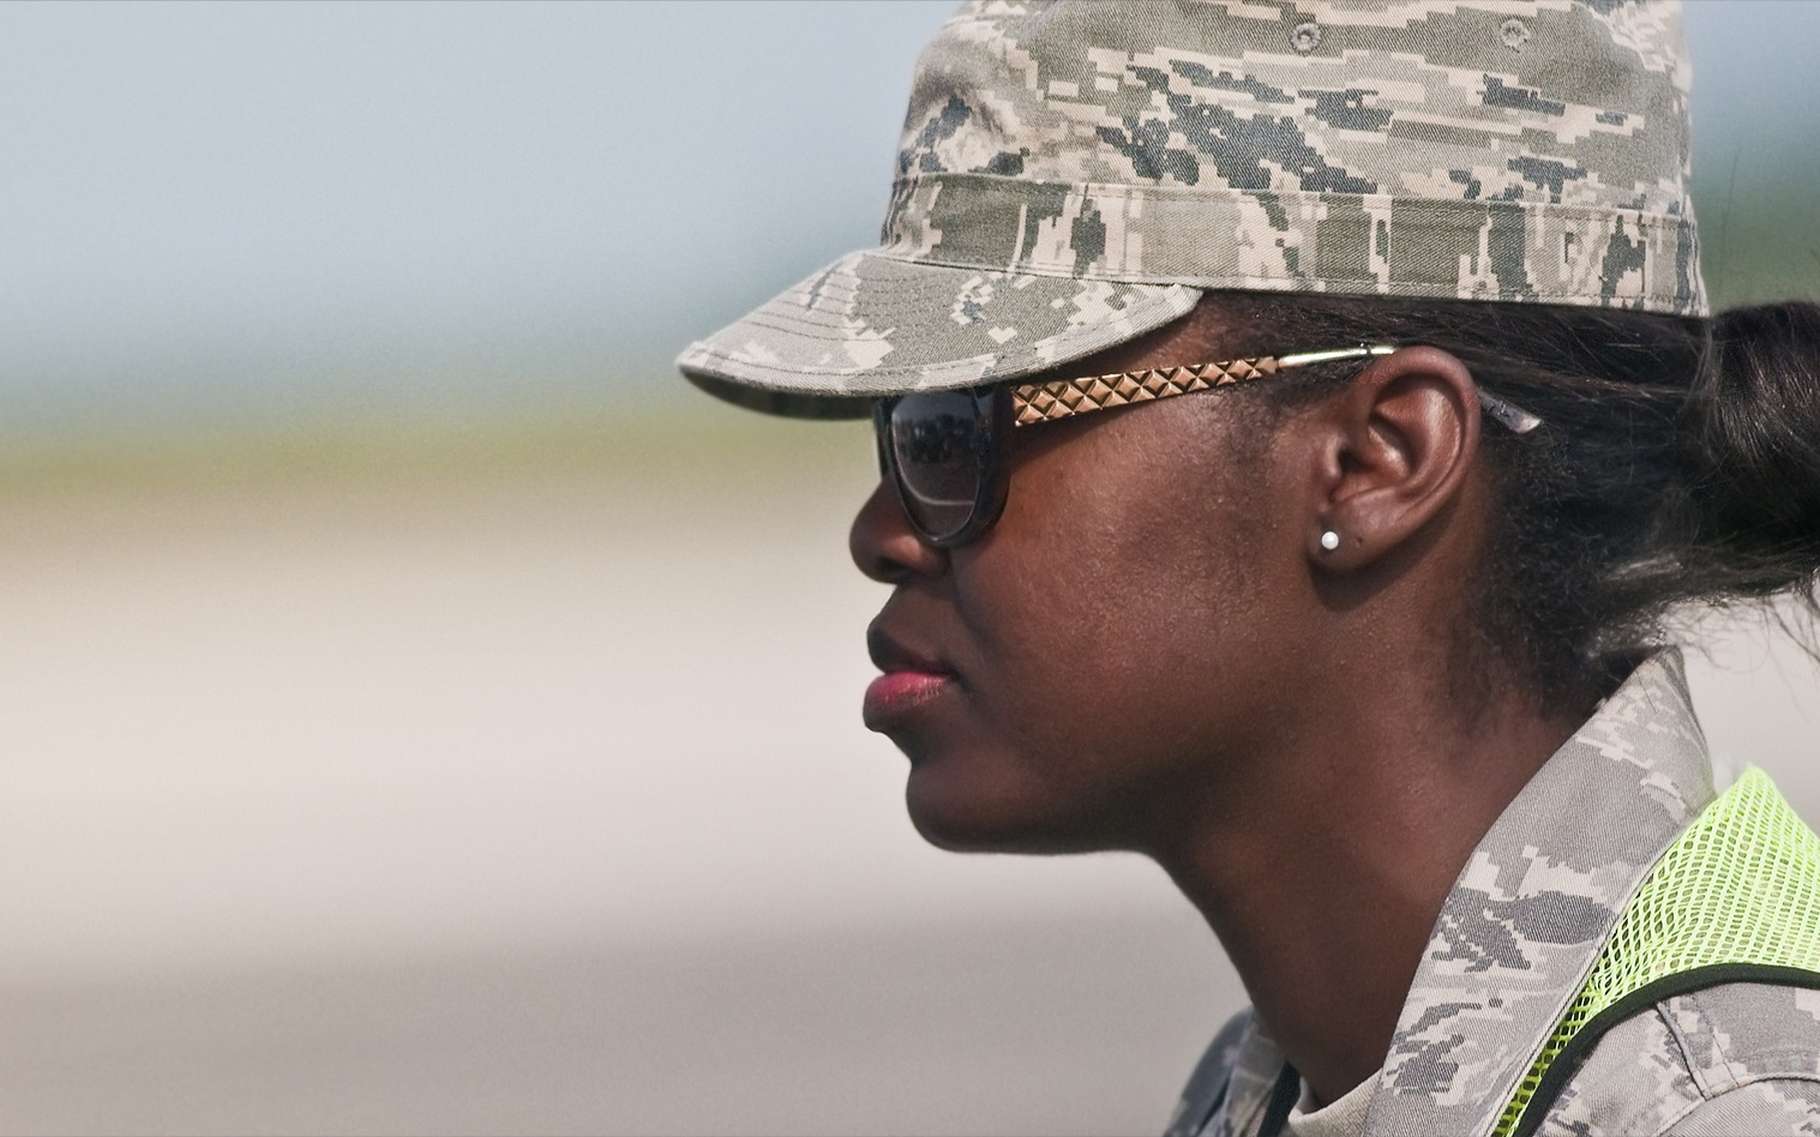 La stimulation transcrânienne a été testée sur vingt militaires, dont quatre femmes. © Daniel-Alvarez, Shutterstock